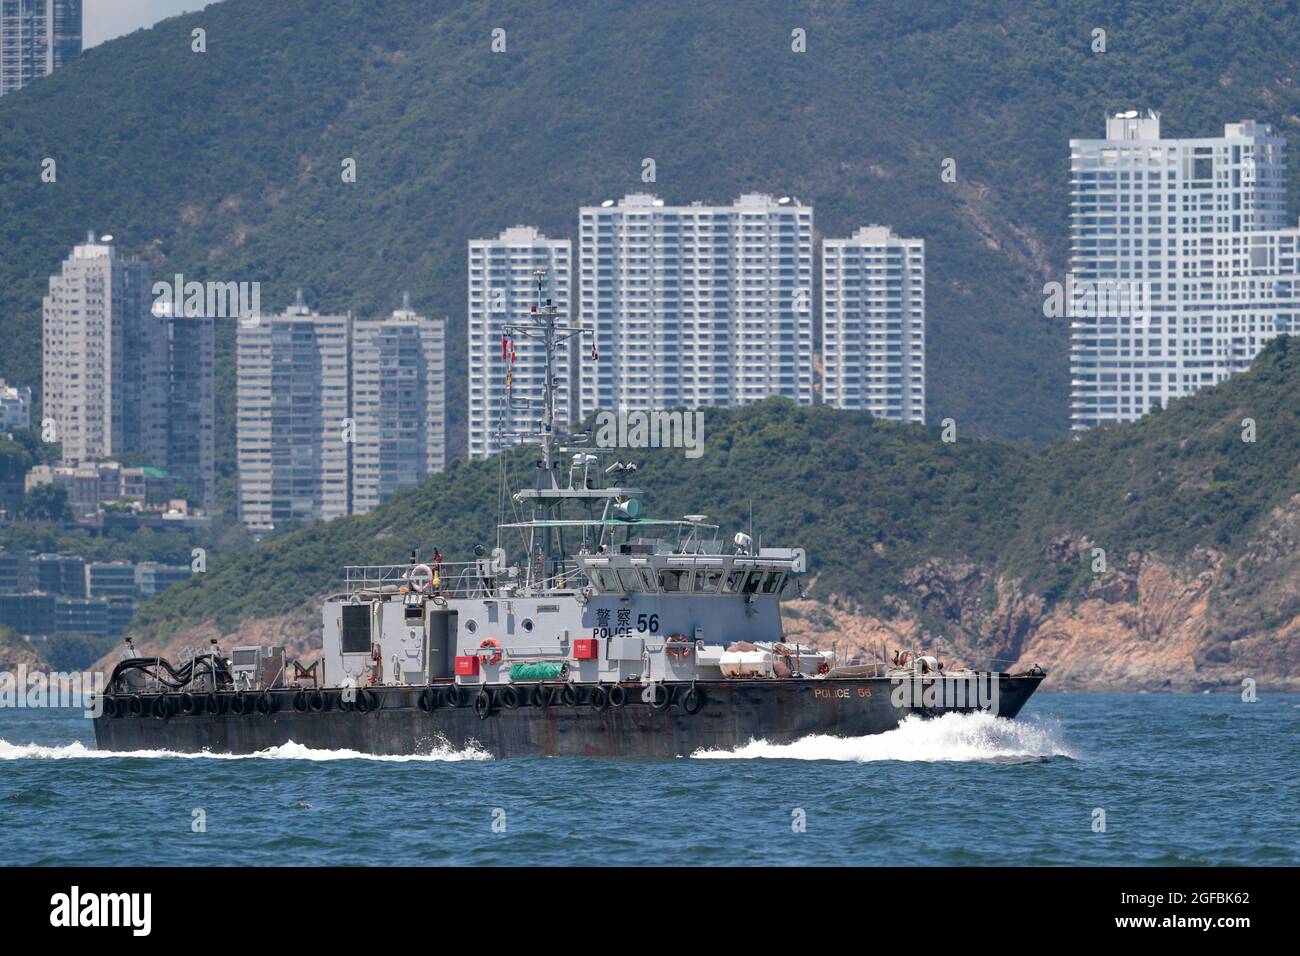 Hong Kong Police Launch 56, south of Repulse Bay, Hong Kong southern waters, South China Sea, China 22nd August 2021 Stock Photo